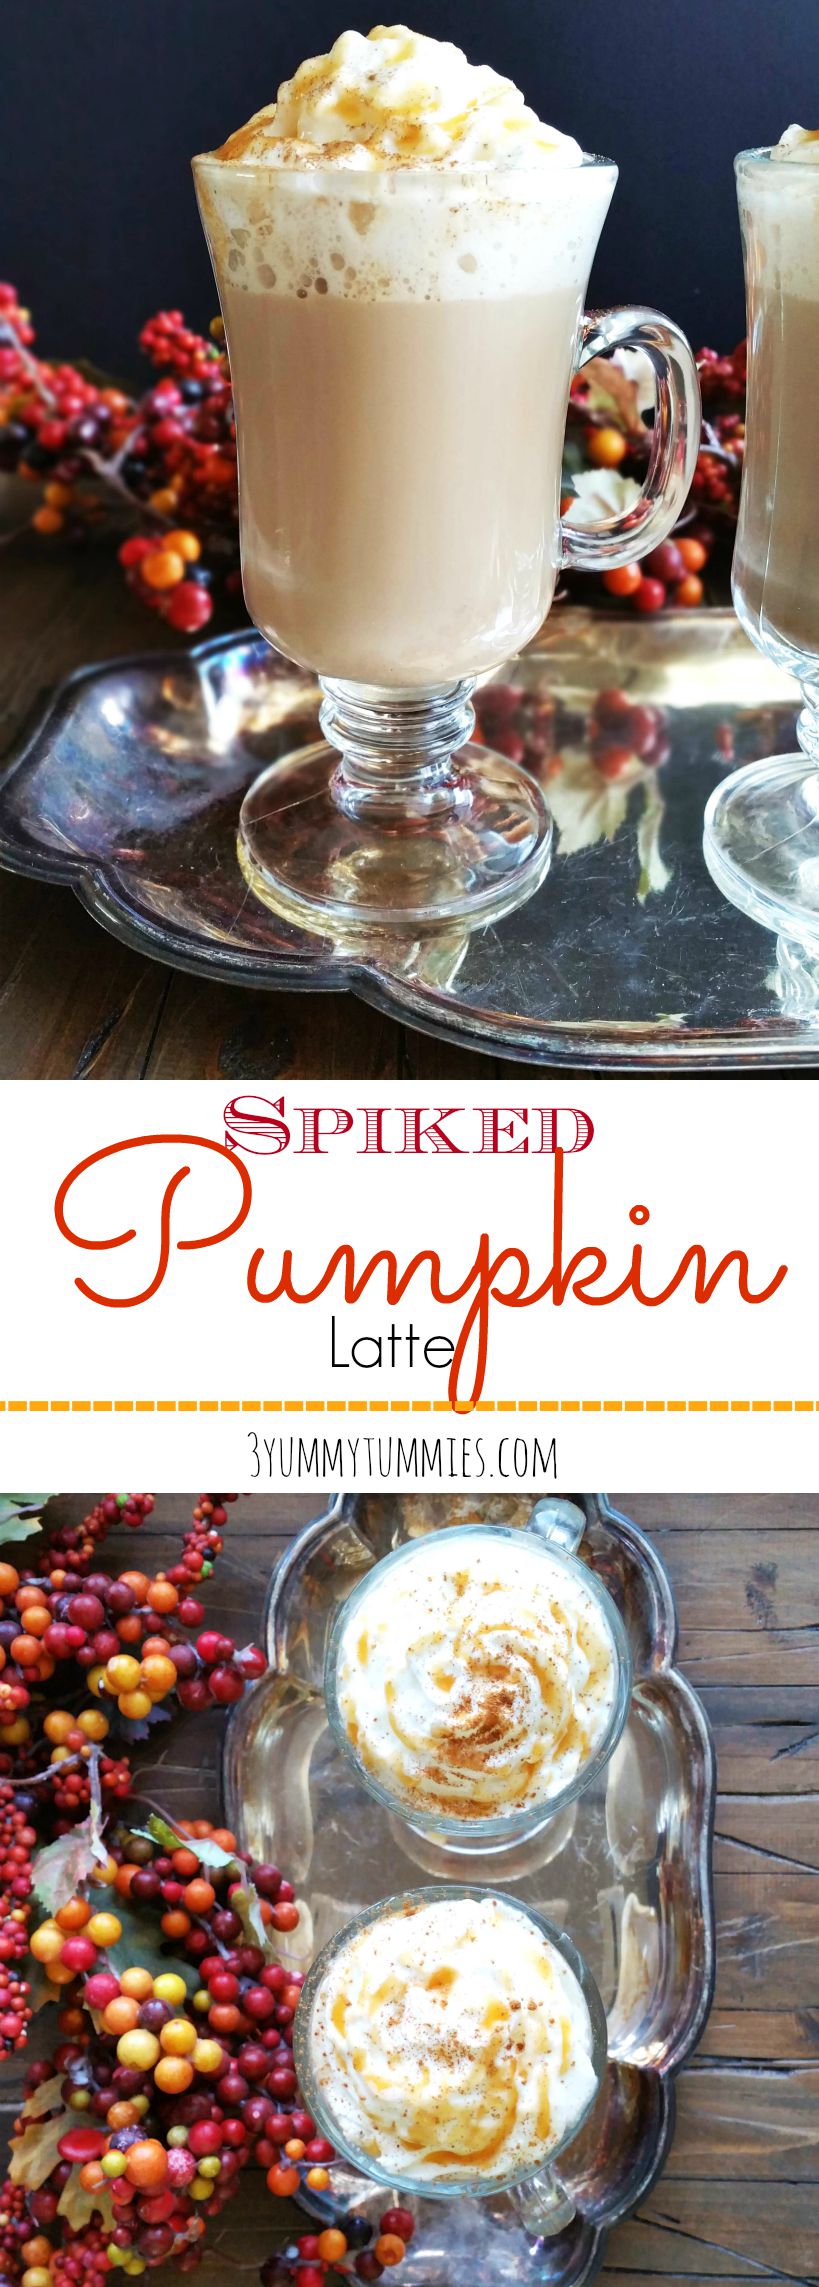 Spiked Pumpkin Latte